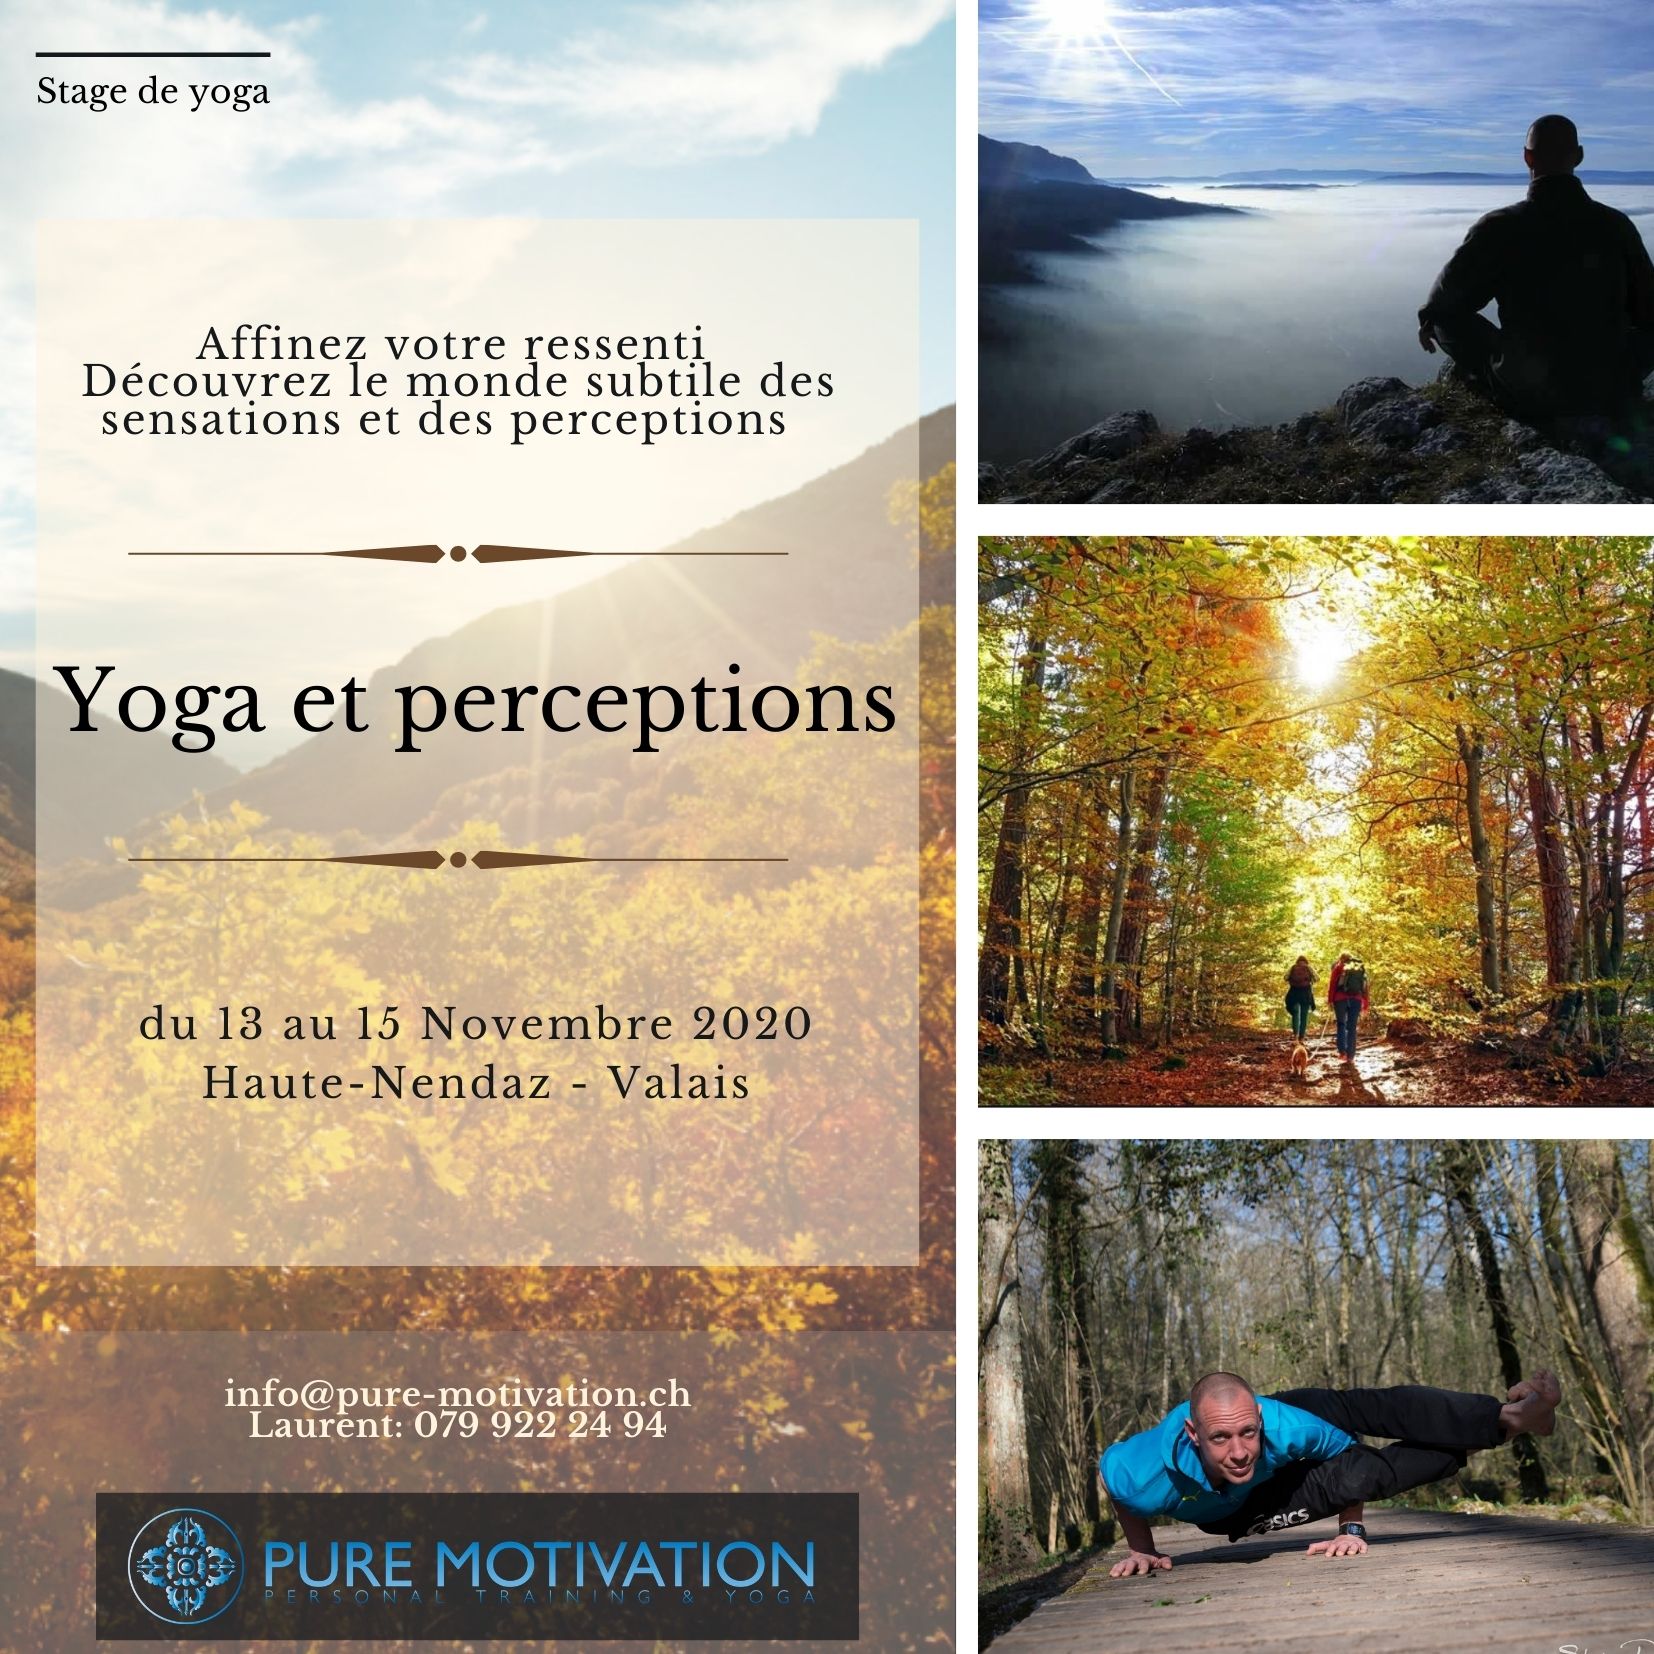 Stage Yoga et Perceptions                                                                                                                                                                                      du 13 au 15 Novembre 2020